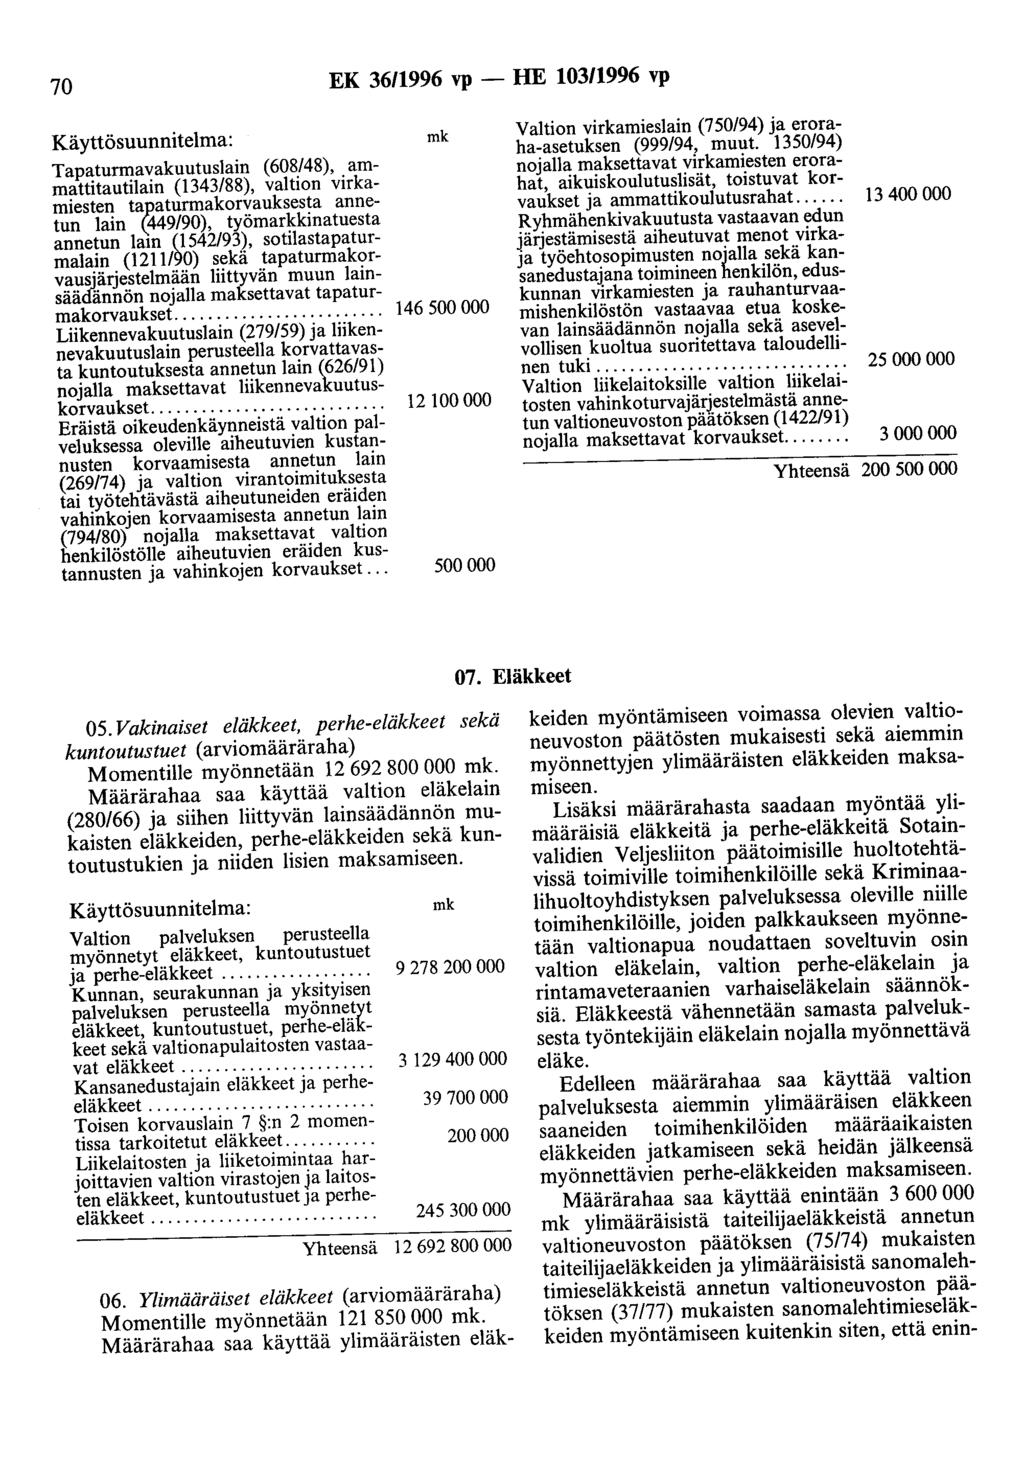 70 EK 3611996 vp- HE 103/1996 vp Käyttösuunnitelma: mk Tapaturmavakuutuslain (608/48), ammattitautilain (1343/88), valtion virkamiesten ta_p.